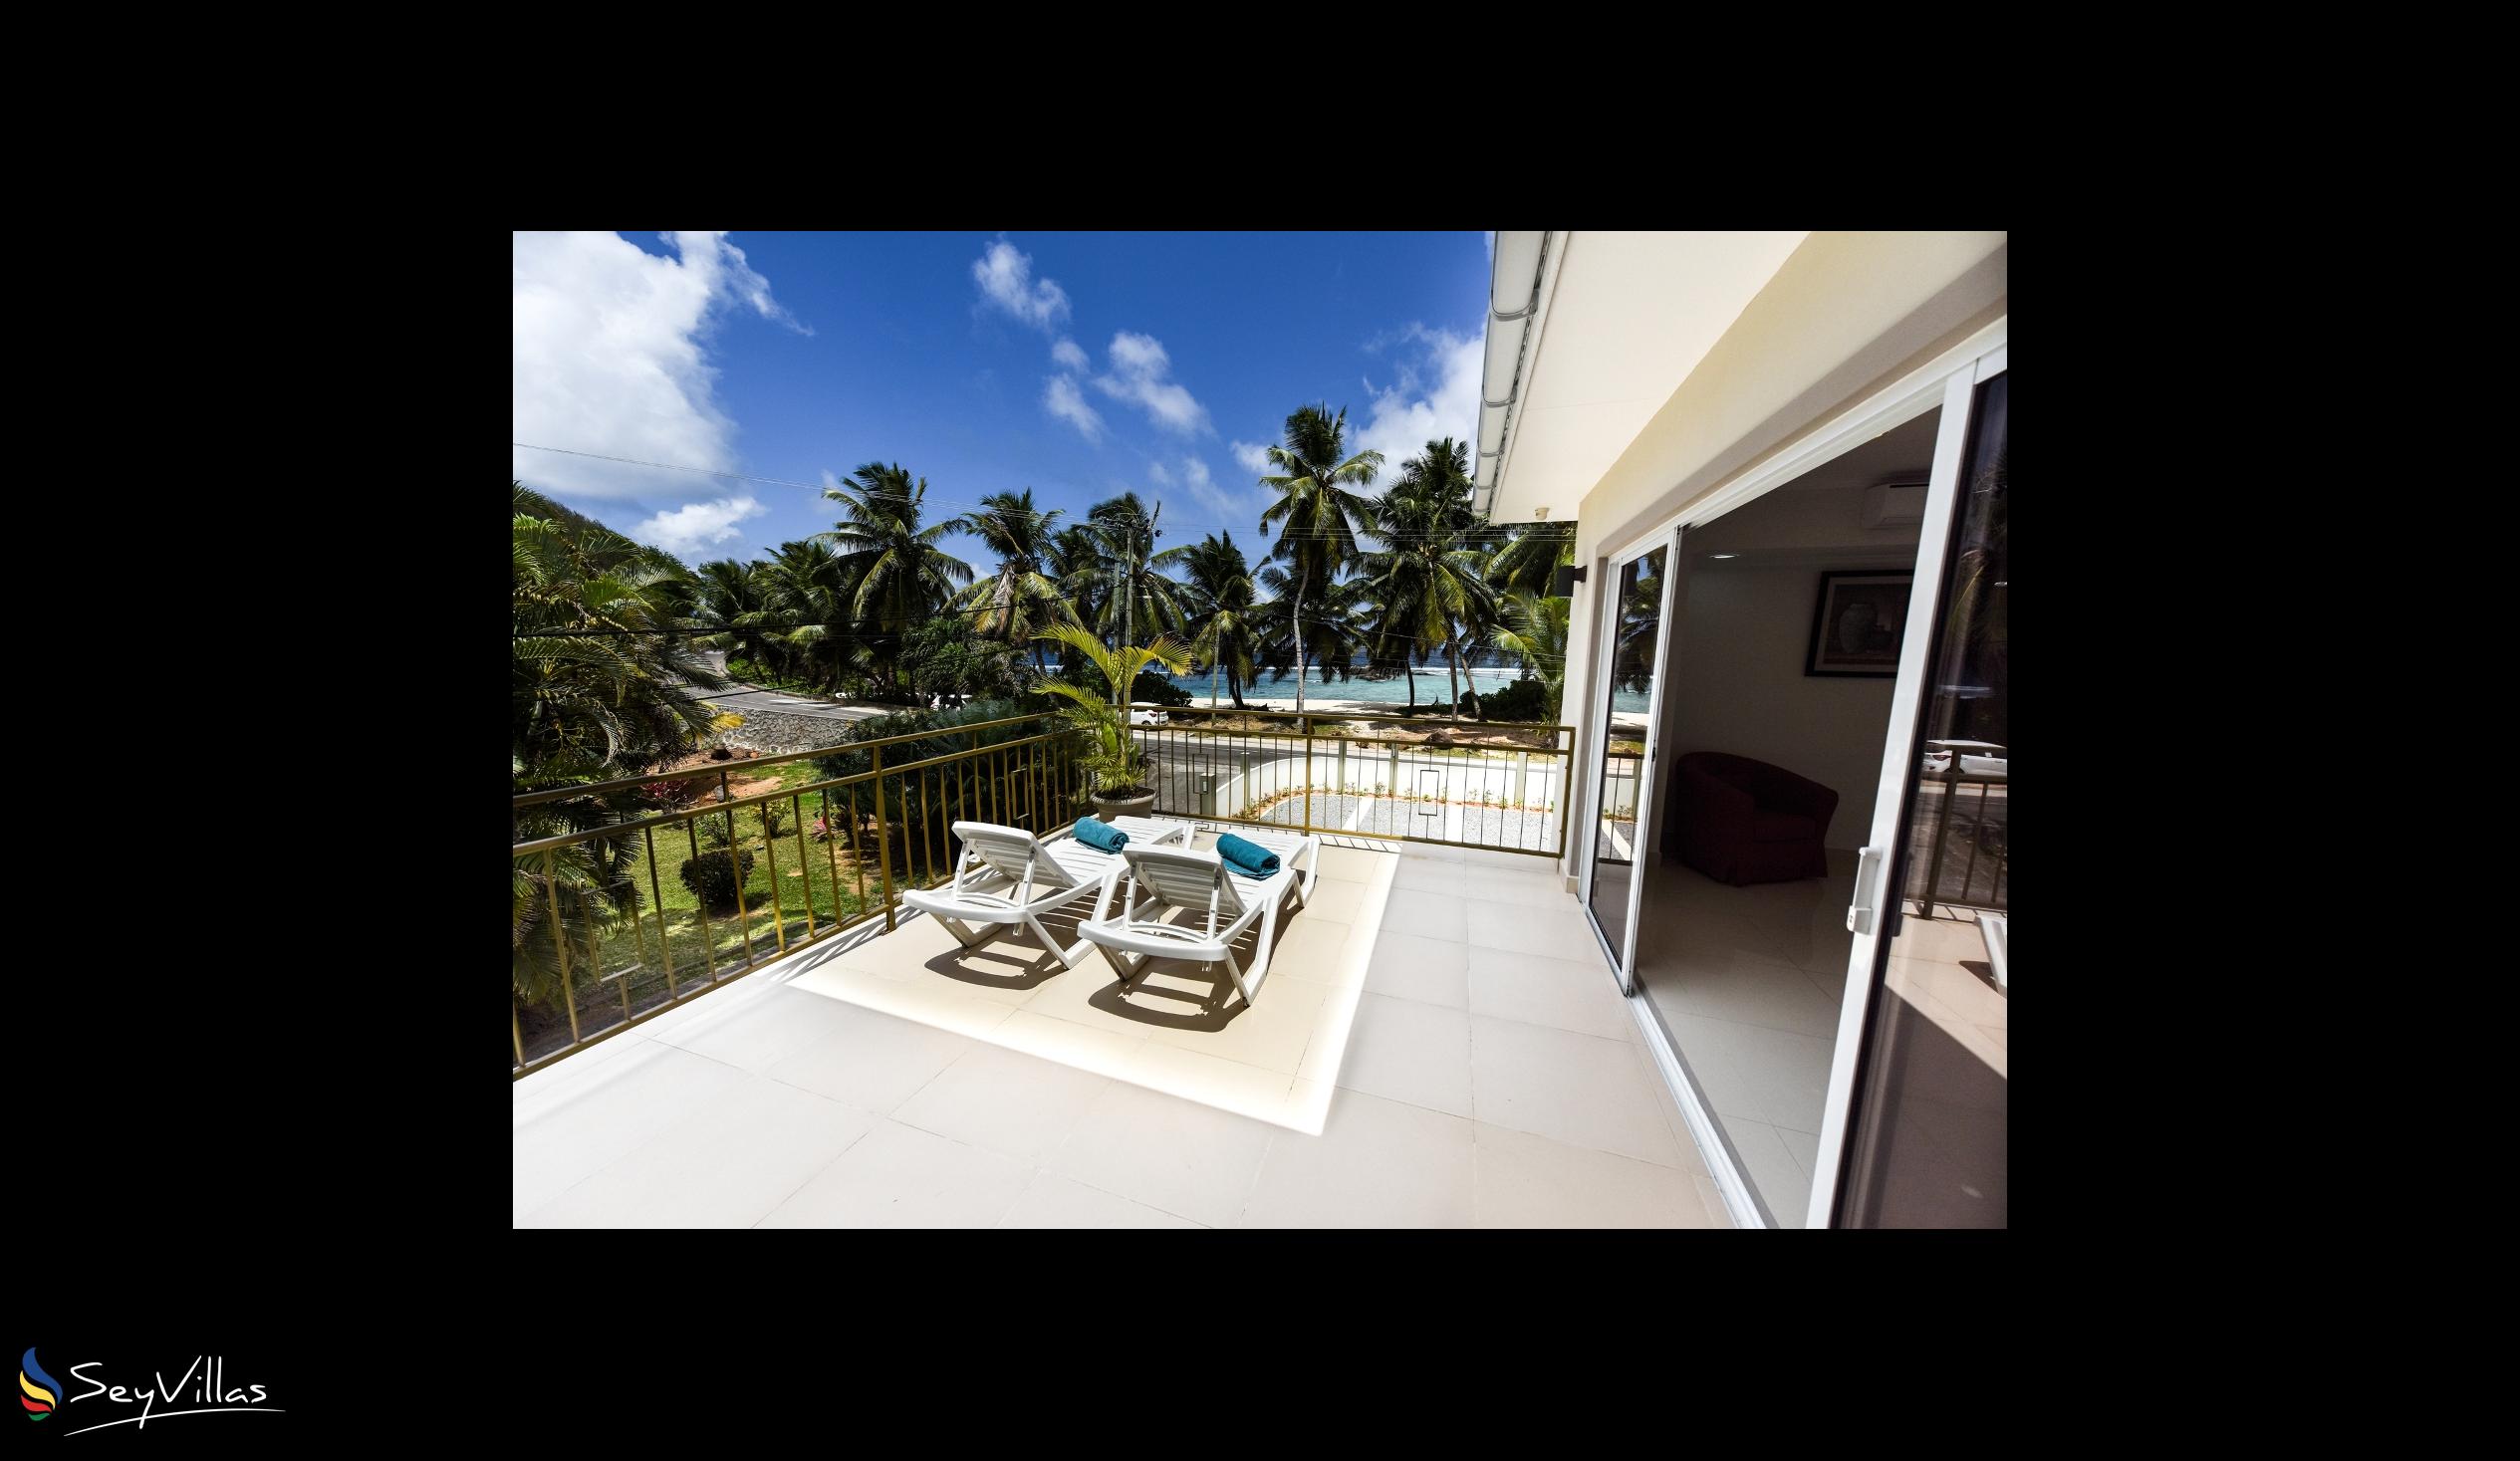 Foto 32: Moulin Kann Villas - Appartement 2 chambres - Mahé (Seychelles)